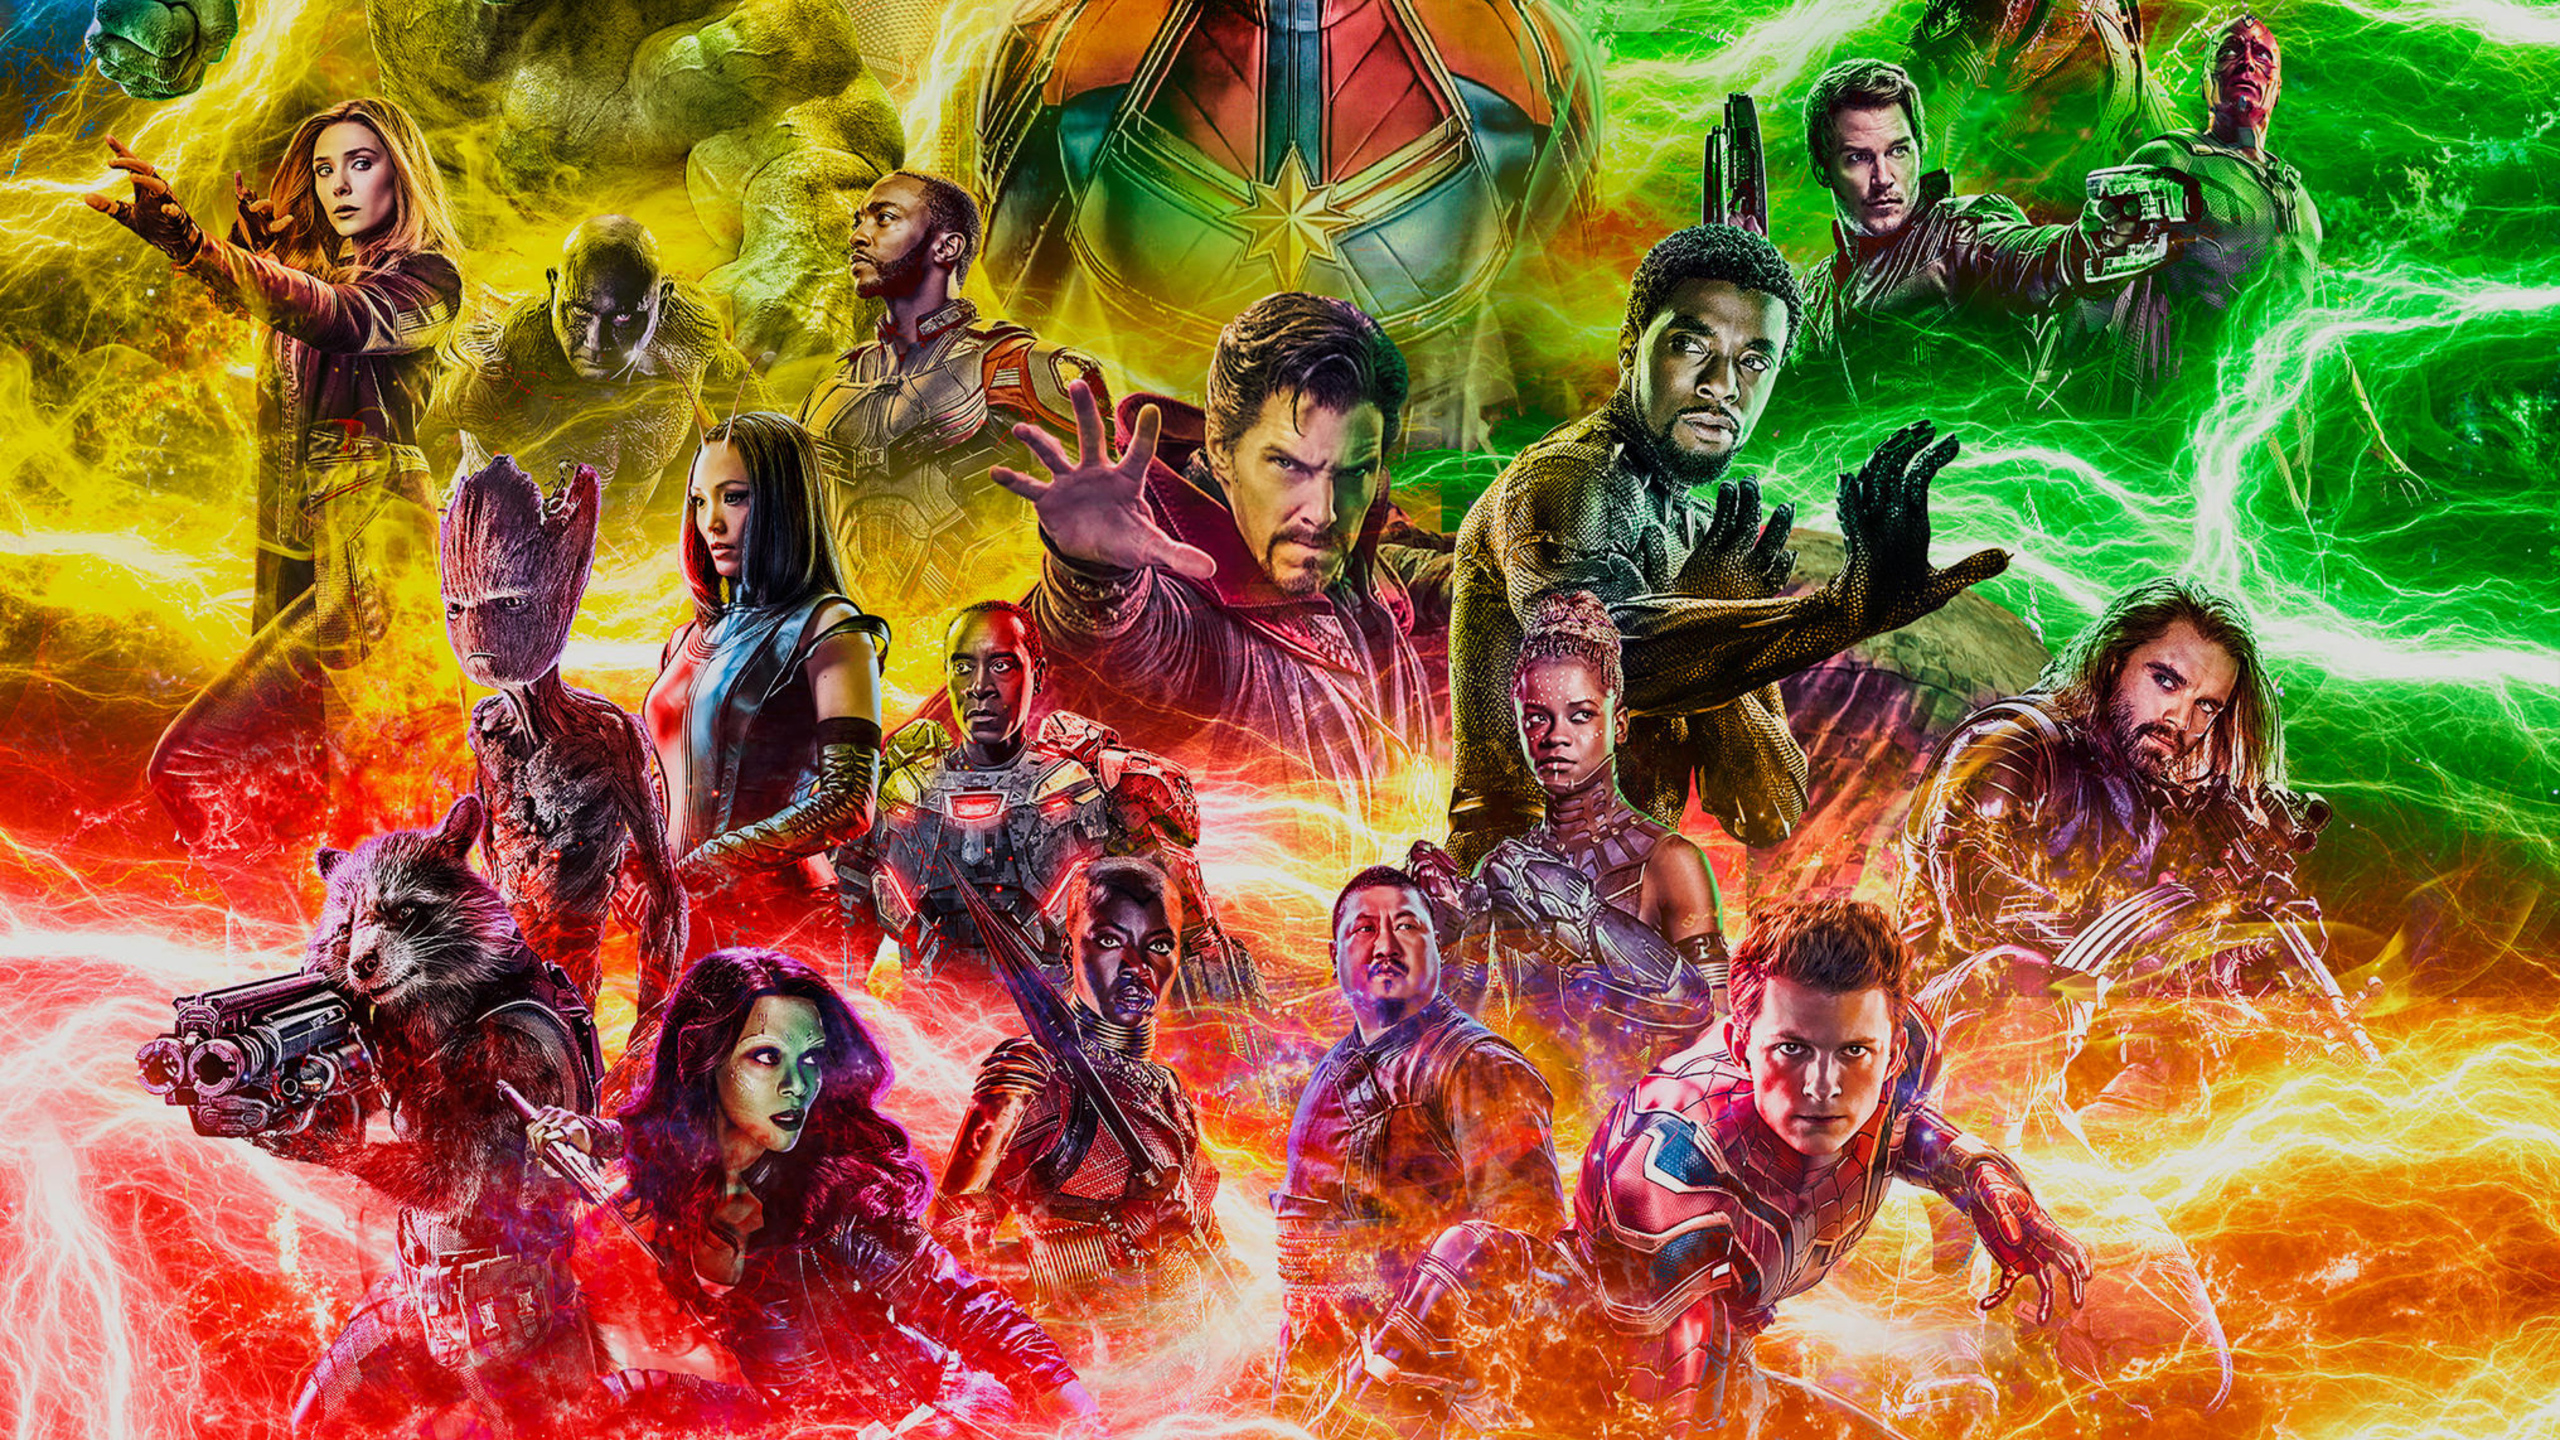 Avengers Endgame 2019 Fan Artwork Wallpapers